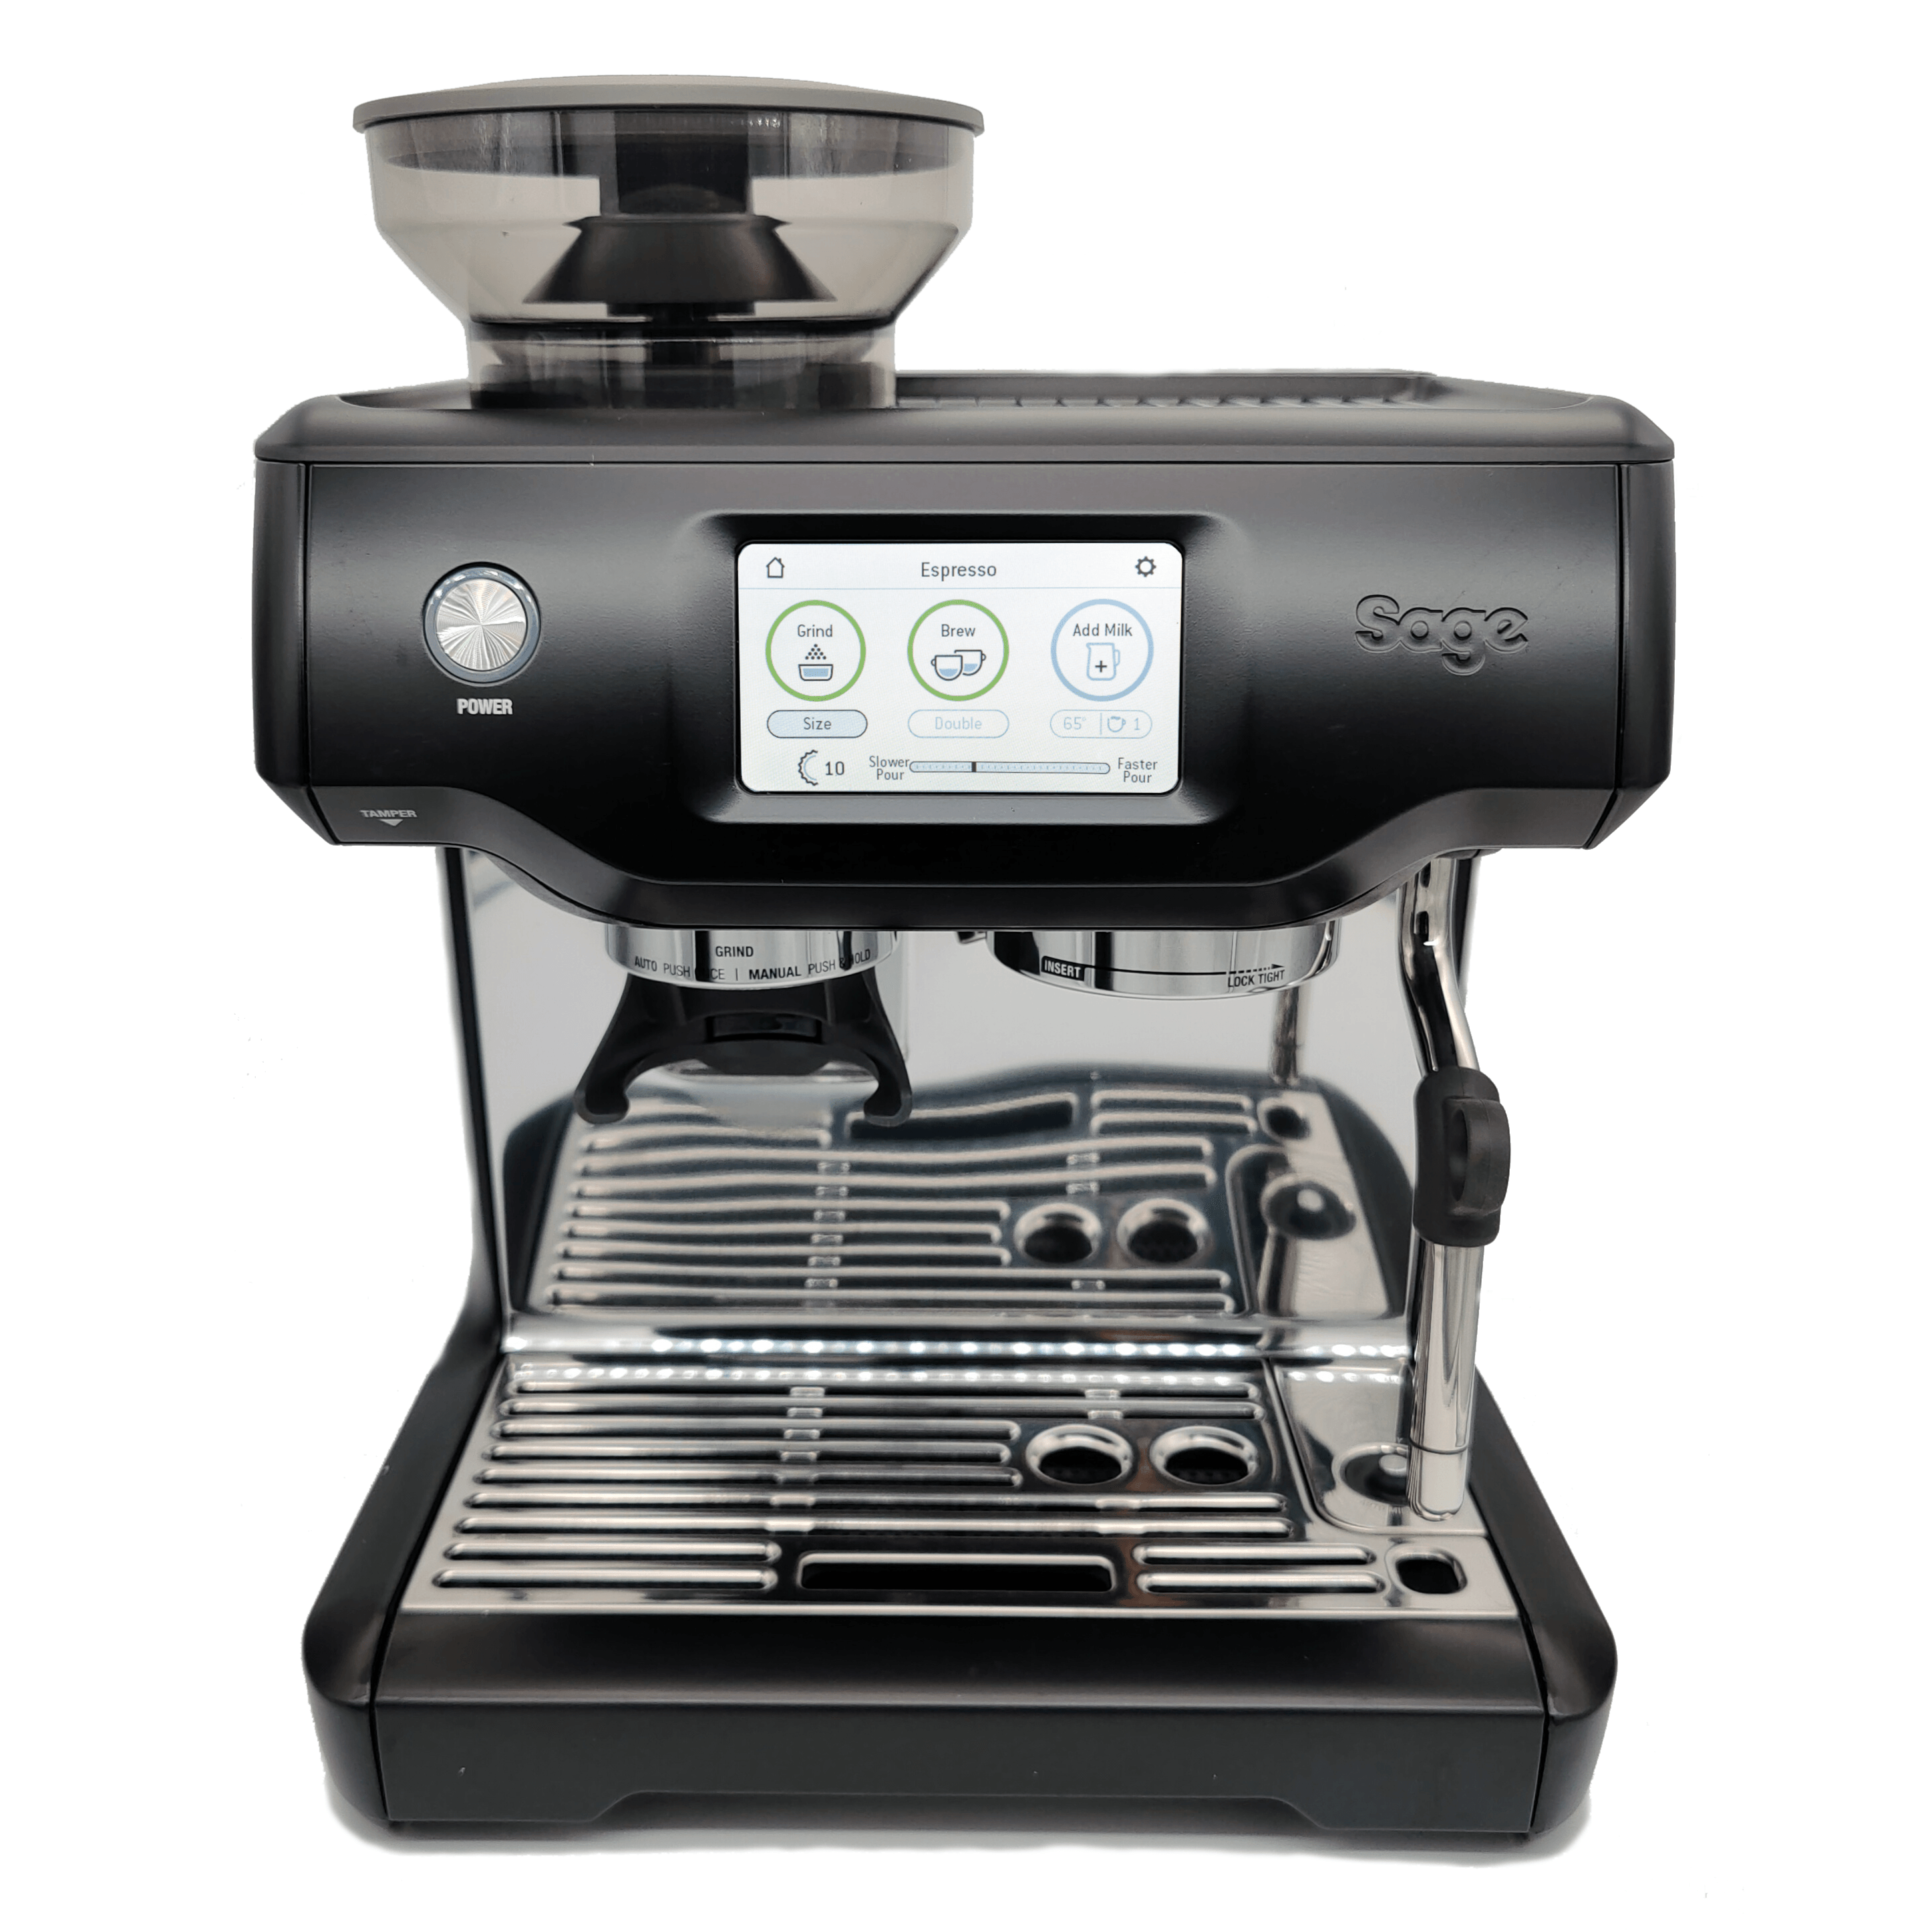 WoldoClean Mælkerens til Espresso/Kaffemaskiner - Kaffepro